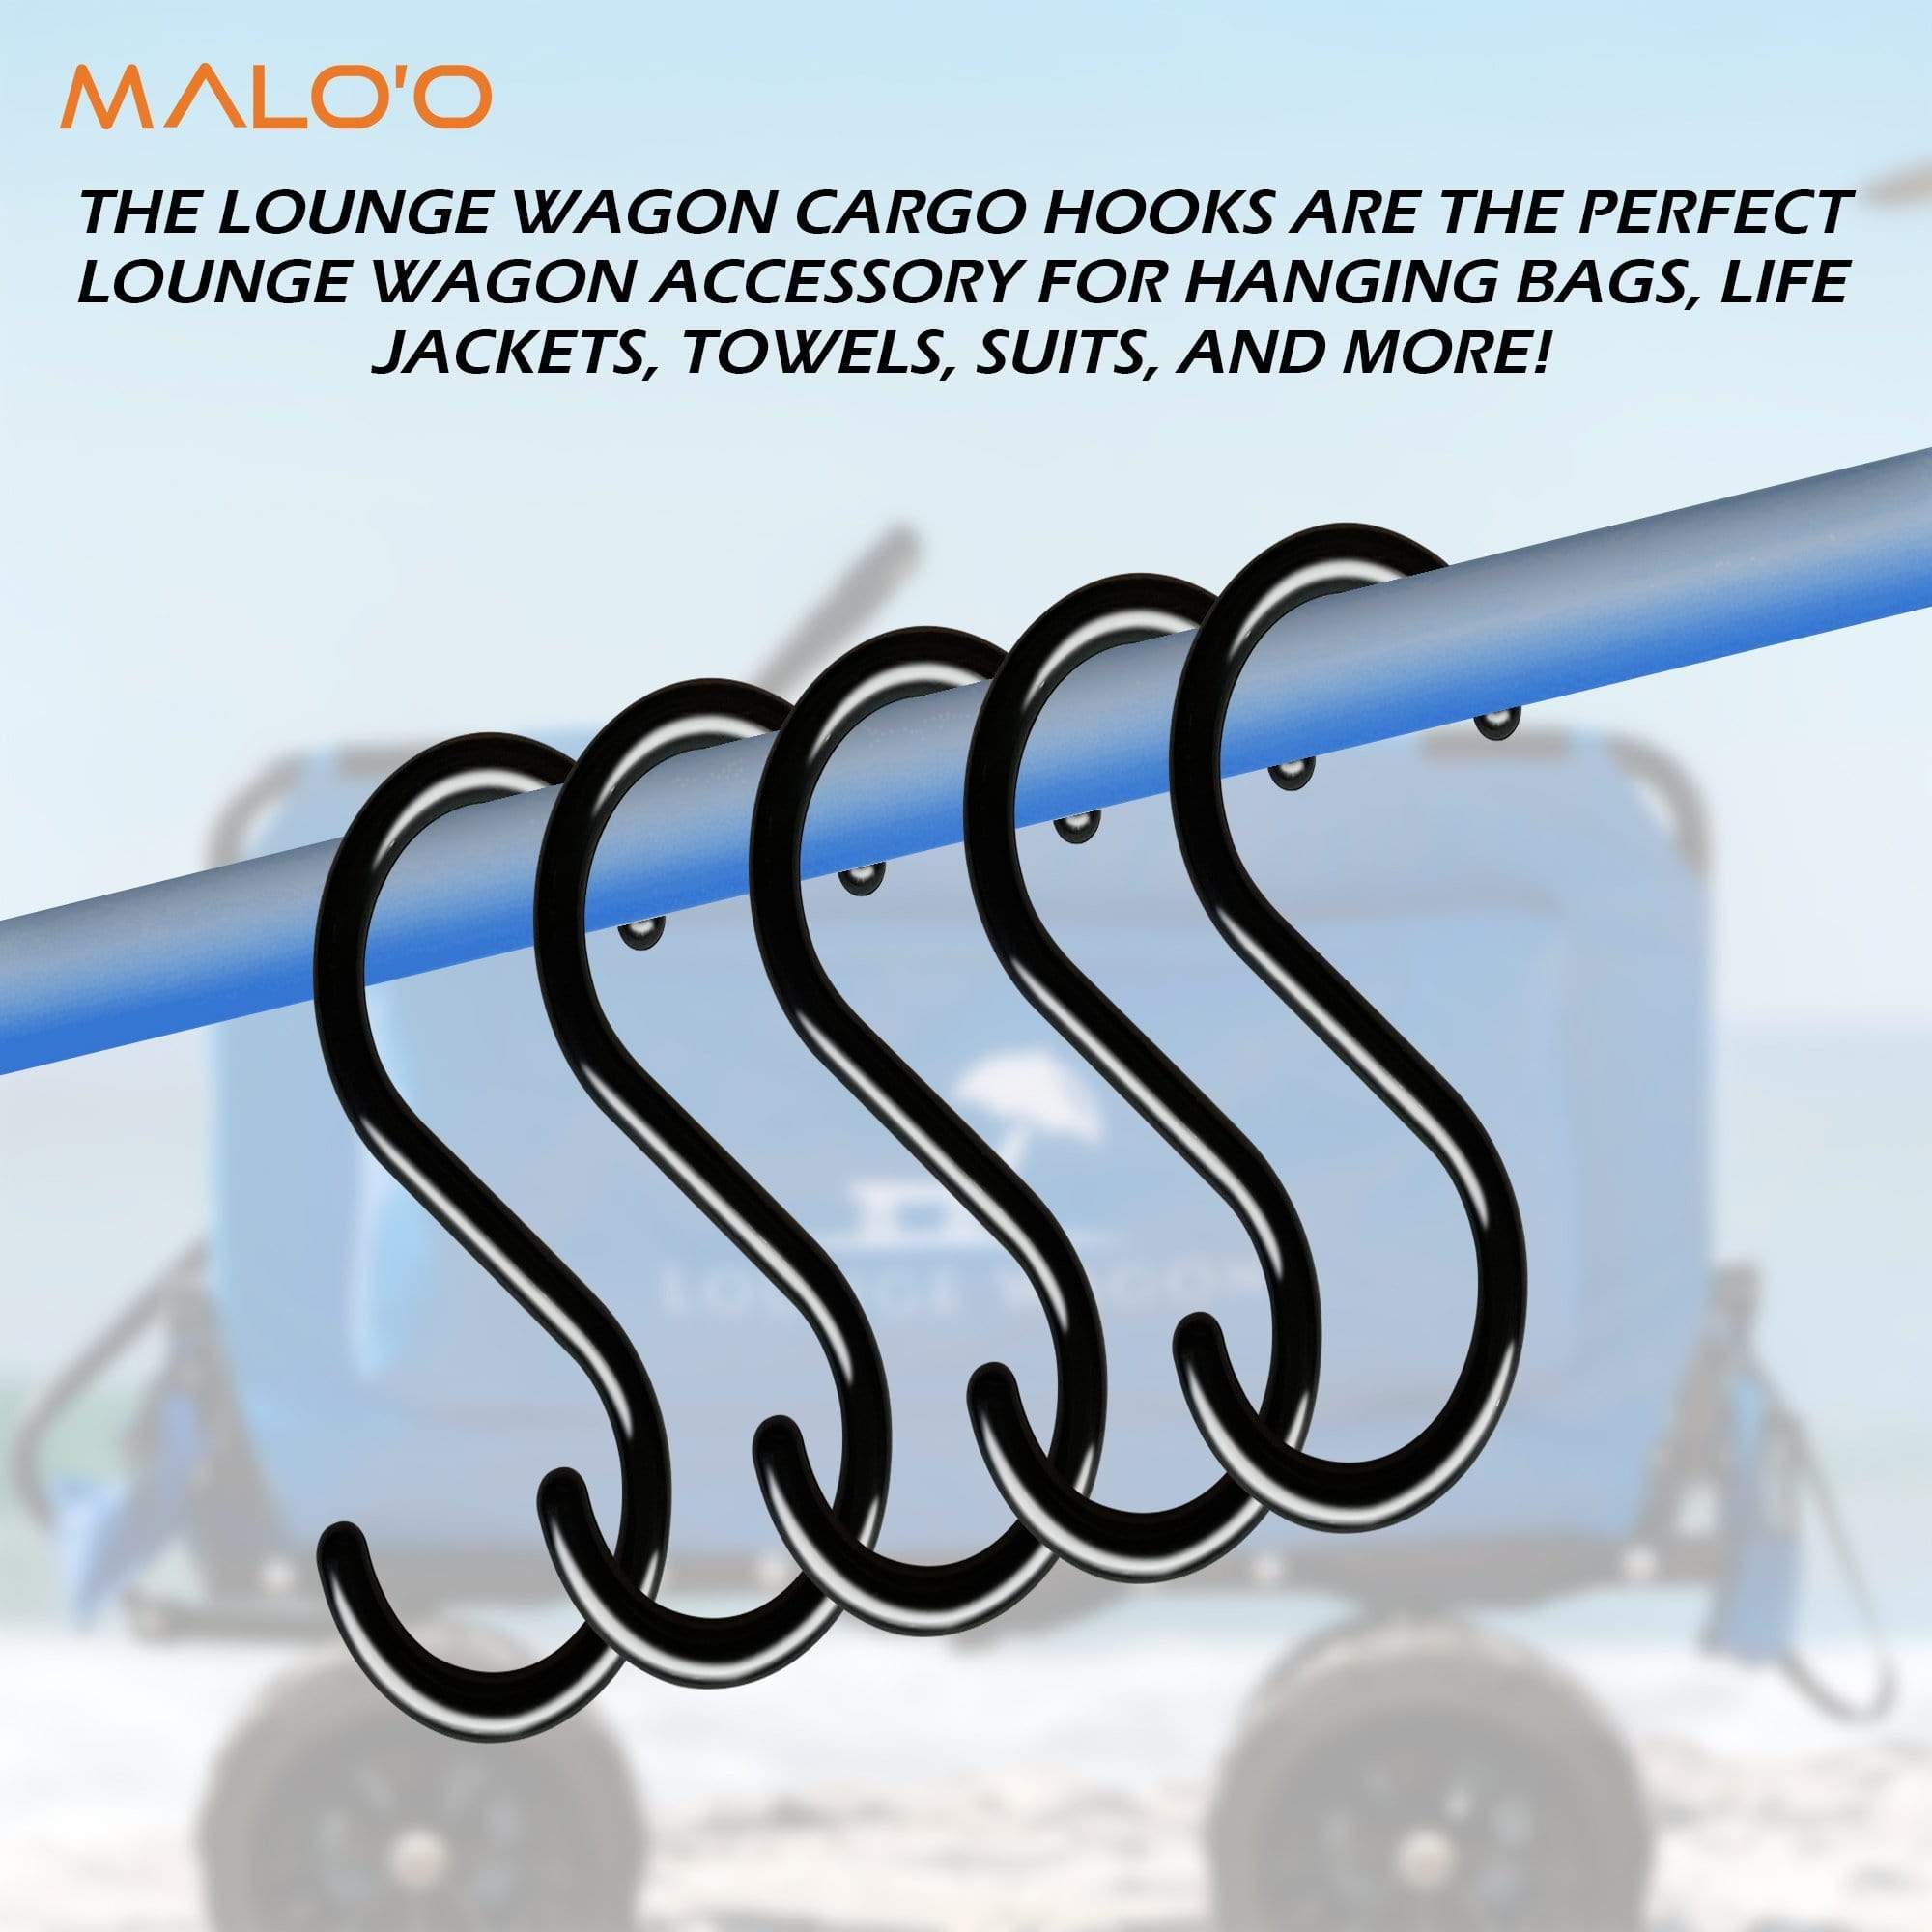 Malo&#39;o Racks Lounge Wagon Cargo Hooks